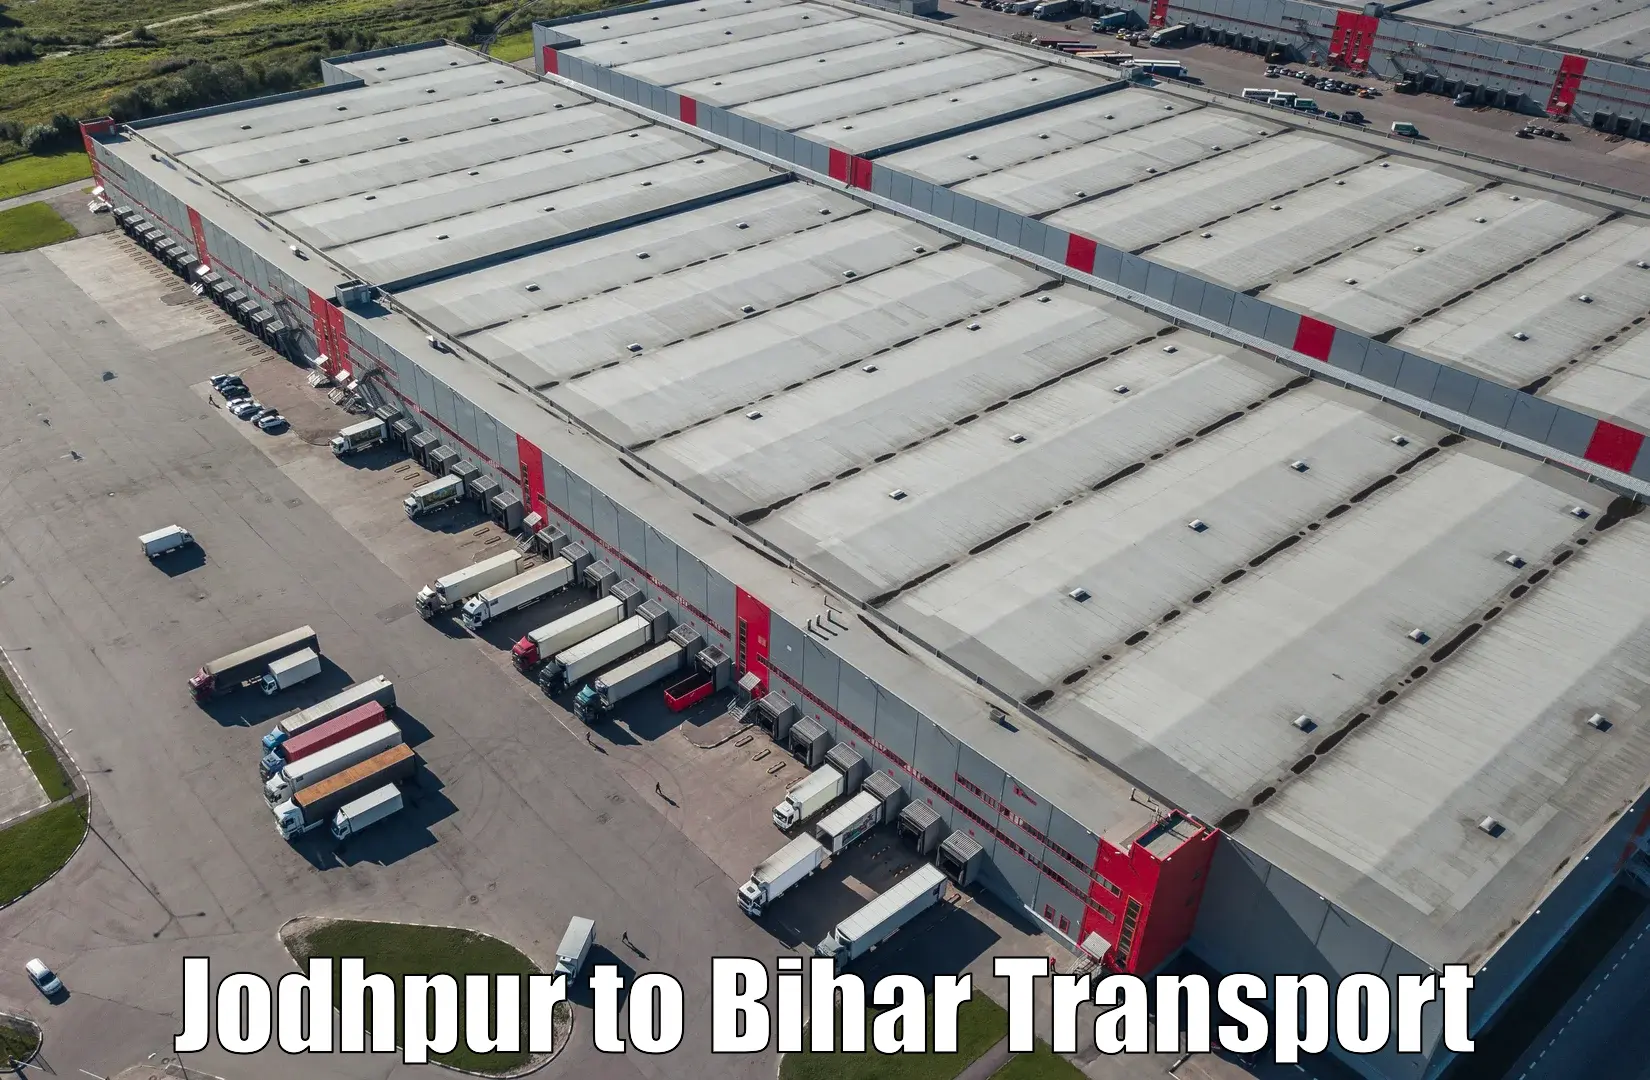 Express transport services Jodhpur to Dighwara